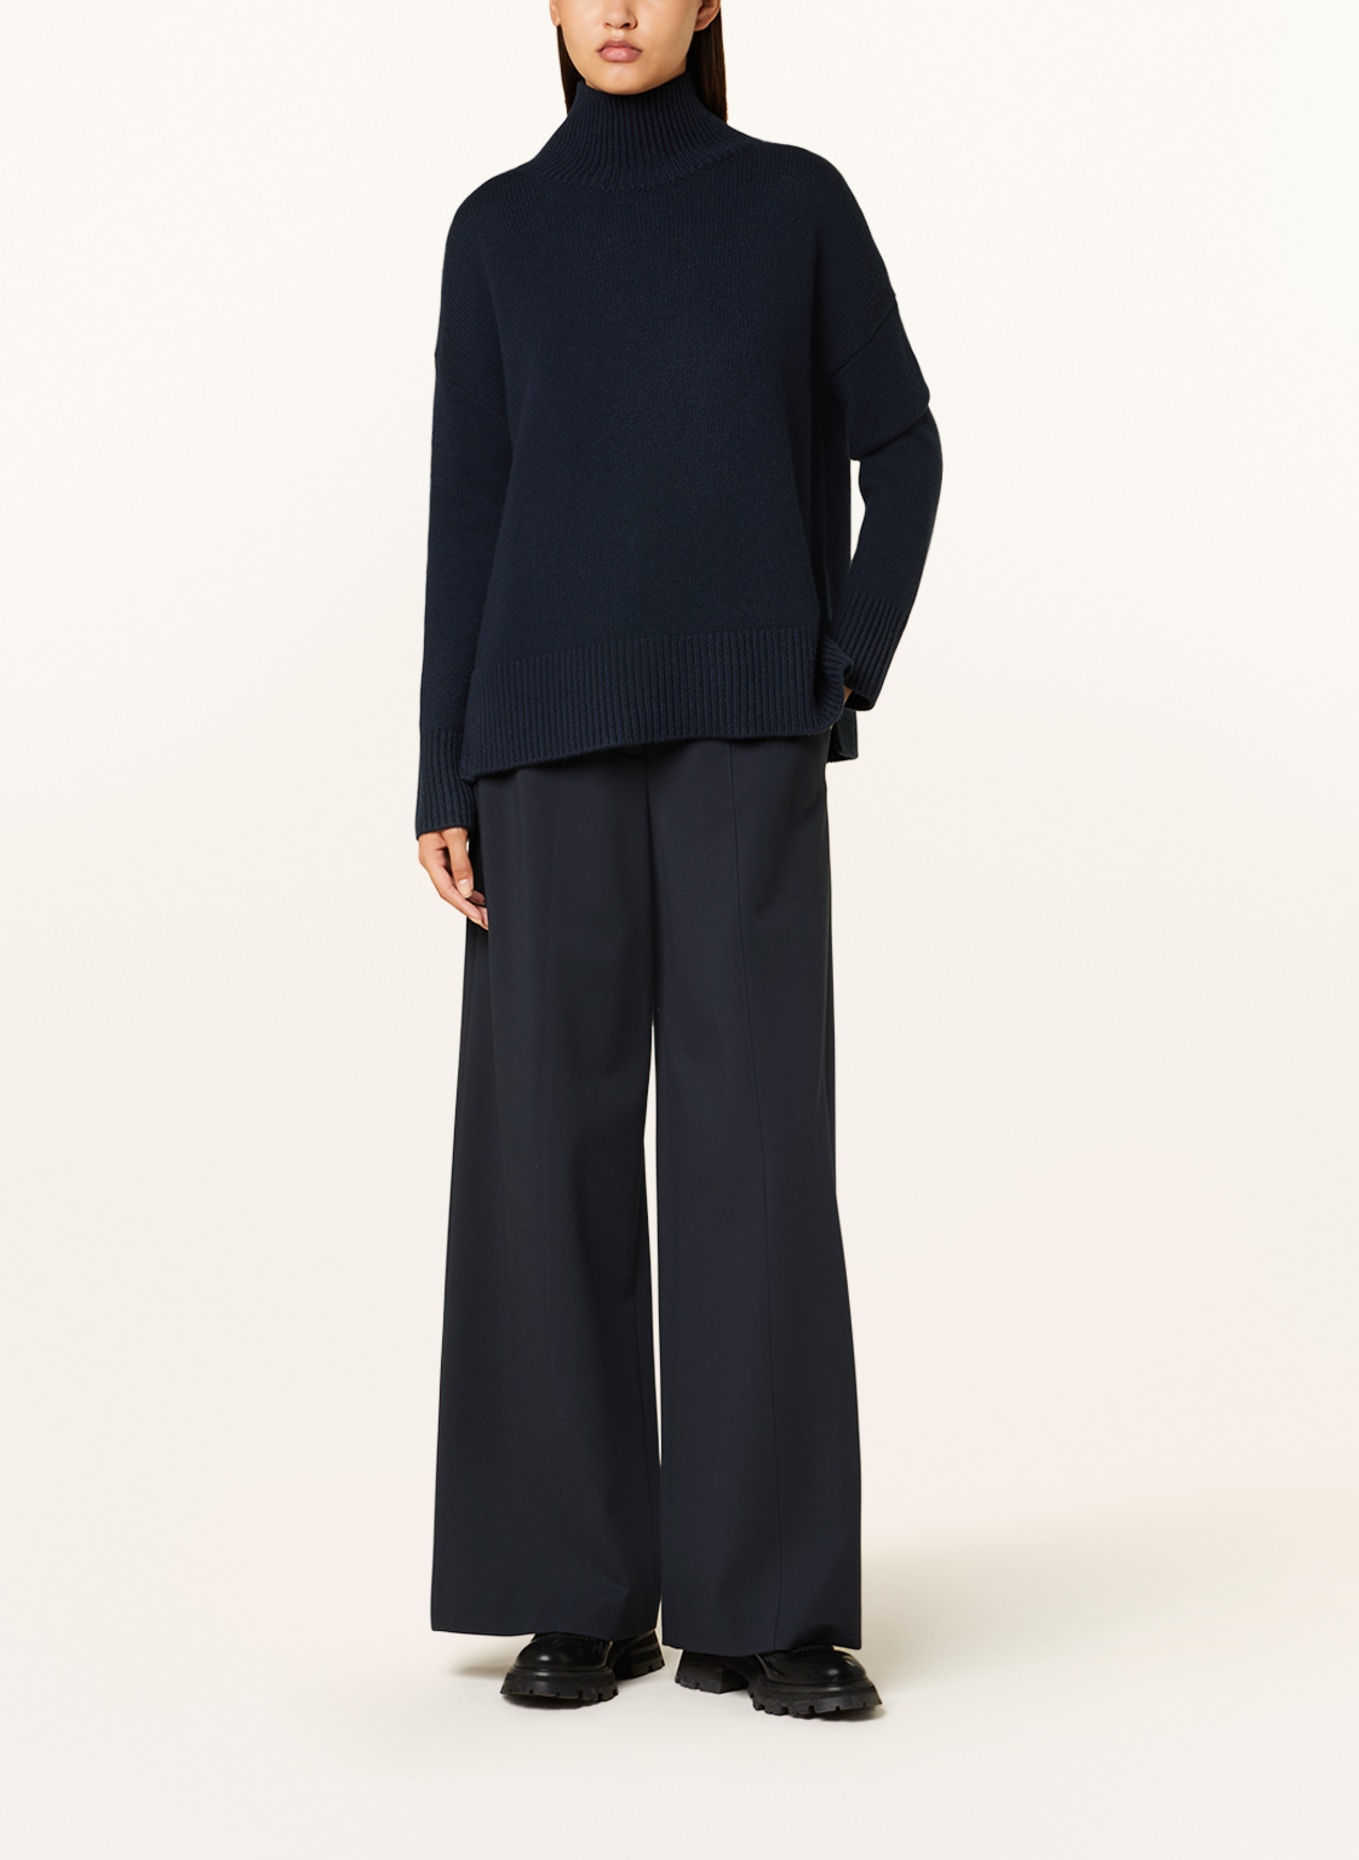 KUJTEN Cashmere-Pullover ULLA, Farbe: DUNKELBLAU (Bild 2)